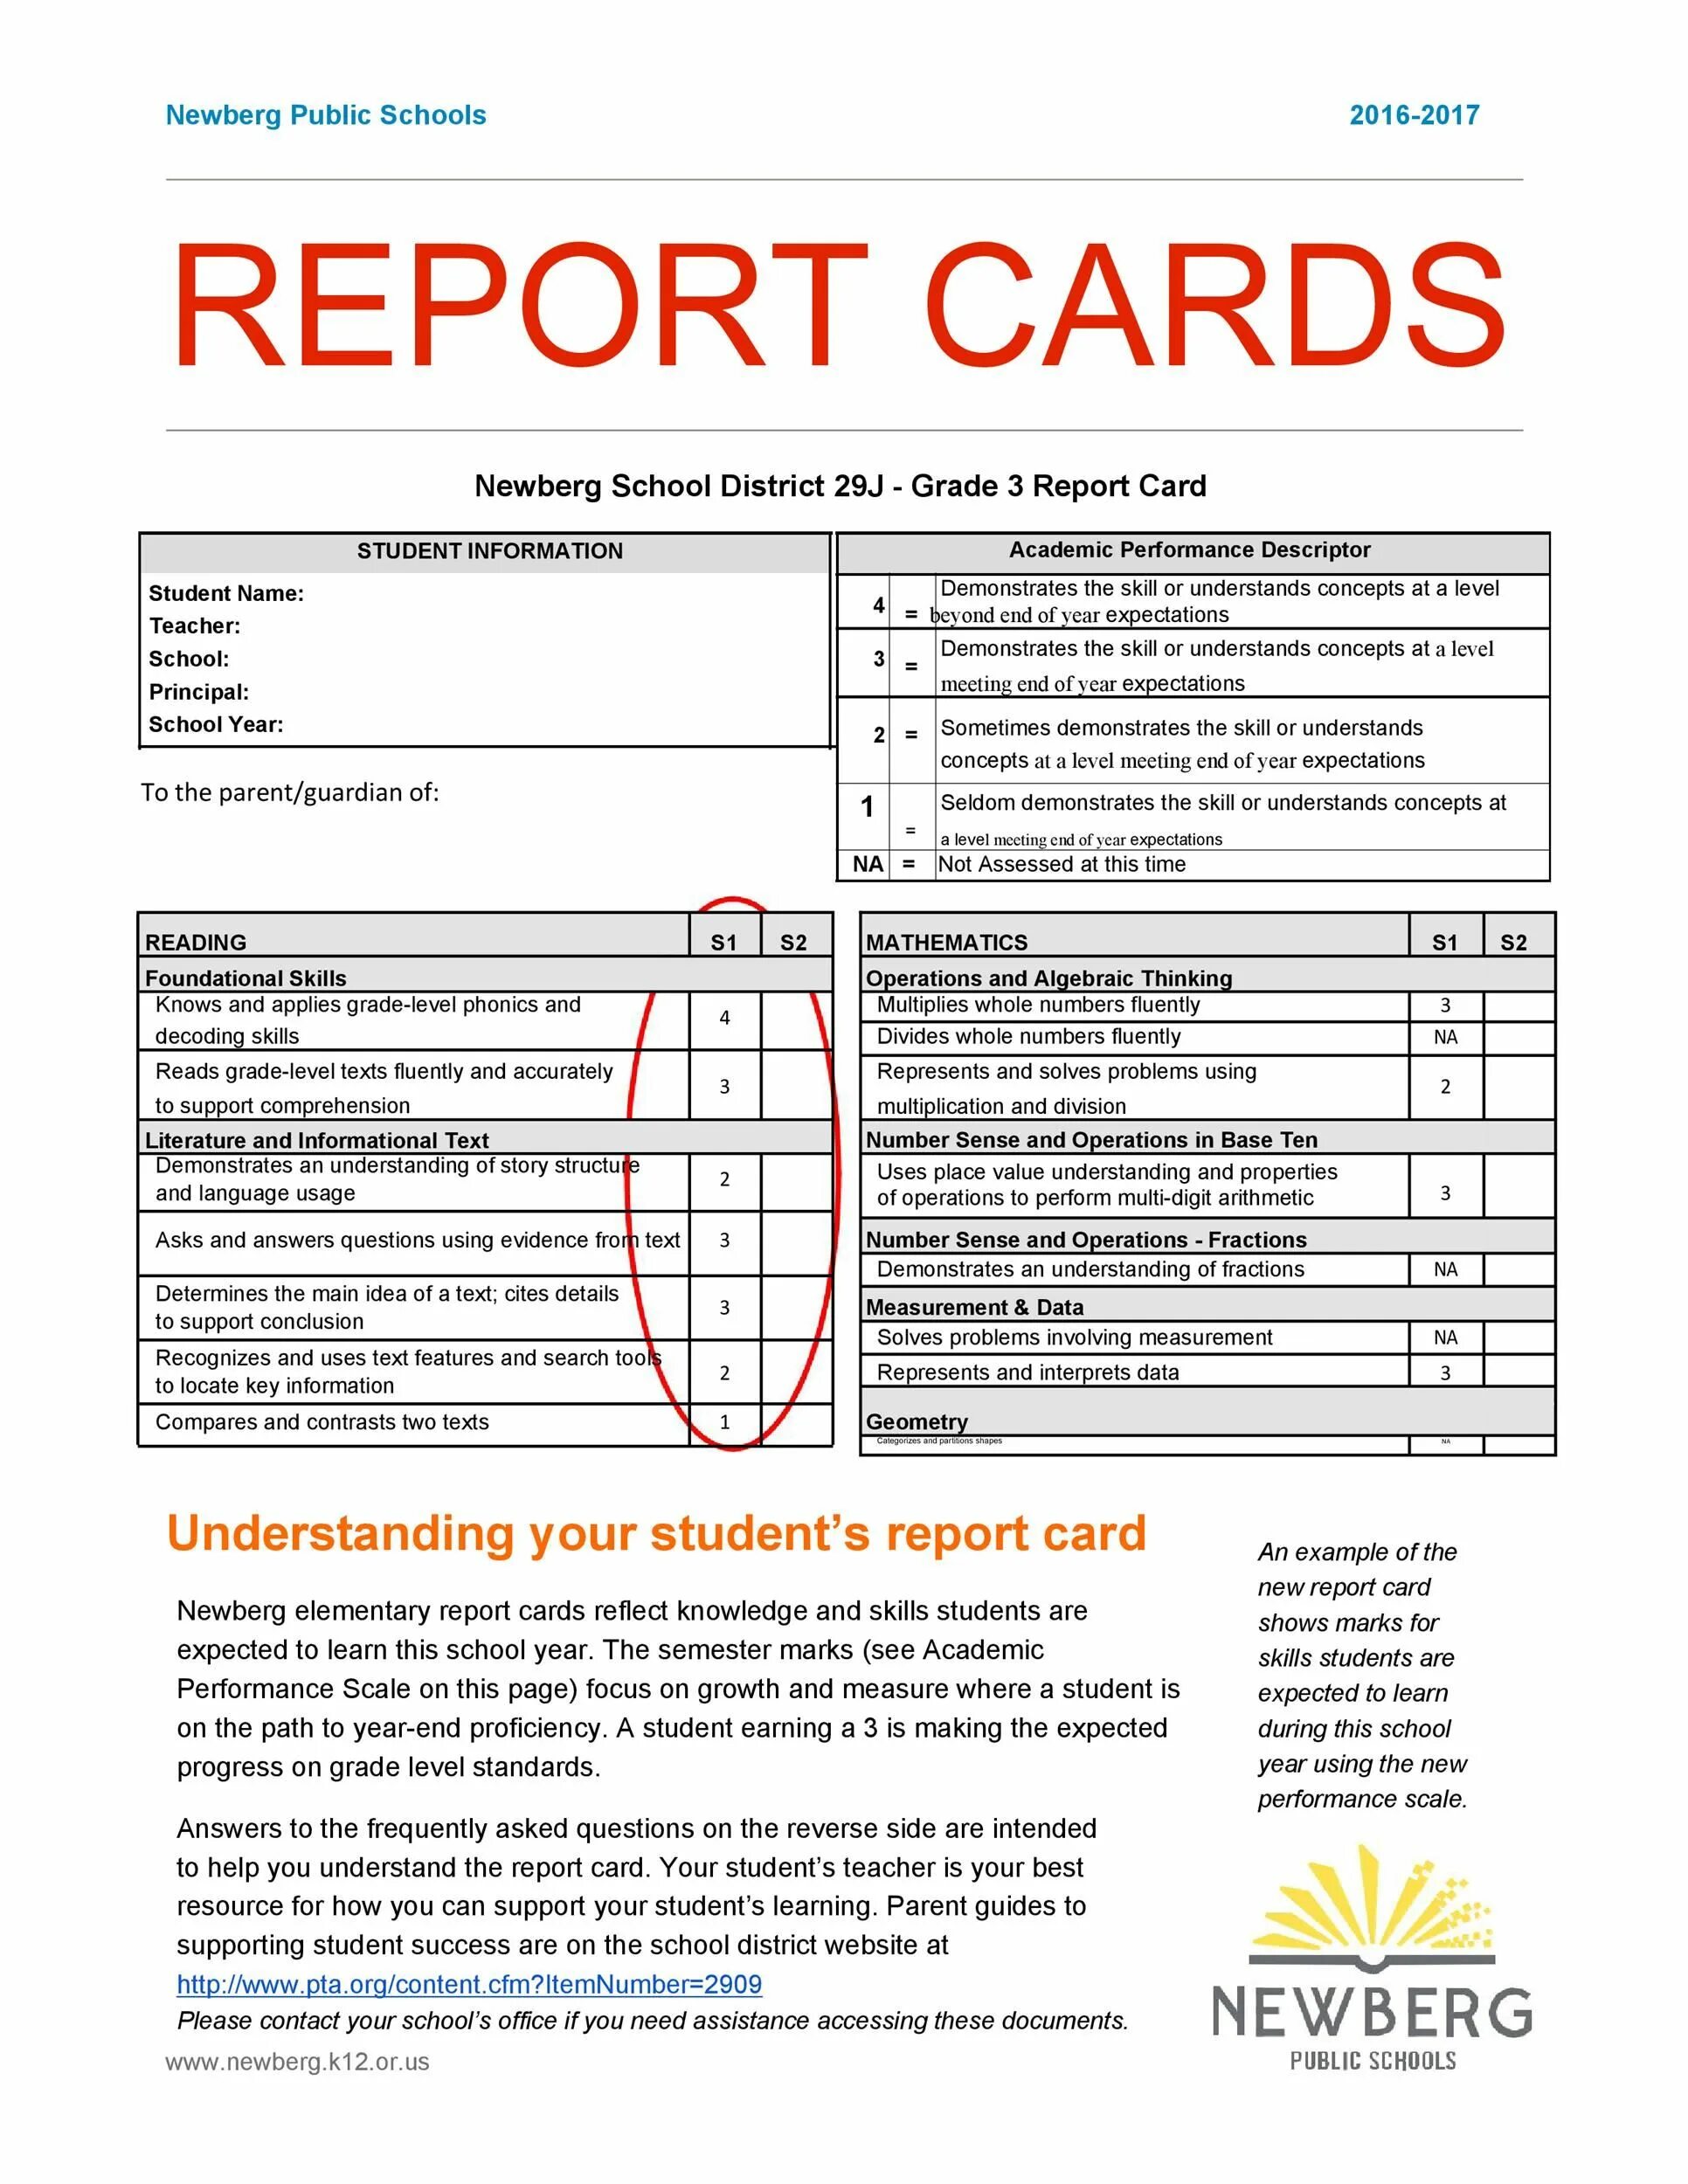 School report. School Report Card. Report Card example. Report Card Samples. School Report example.